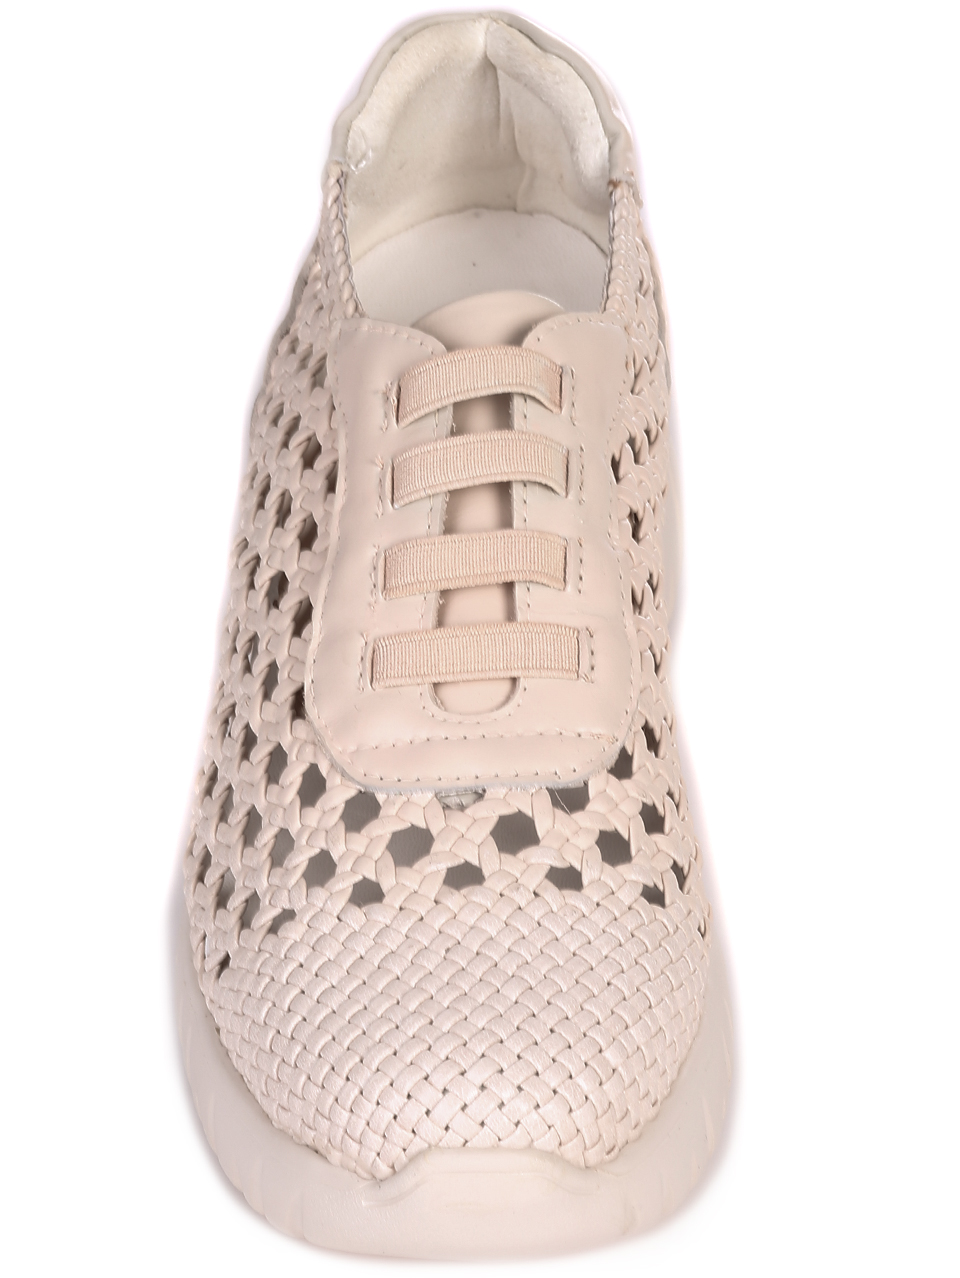 Eжедневни дамски обувки от естествена кожа с перфорации в бежово 12081 blanco/beige